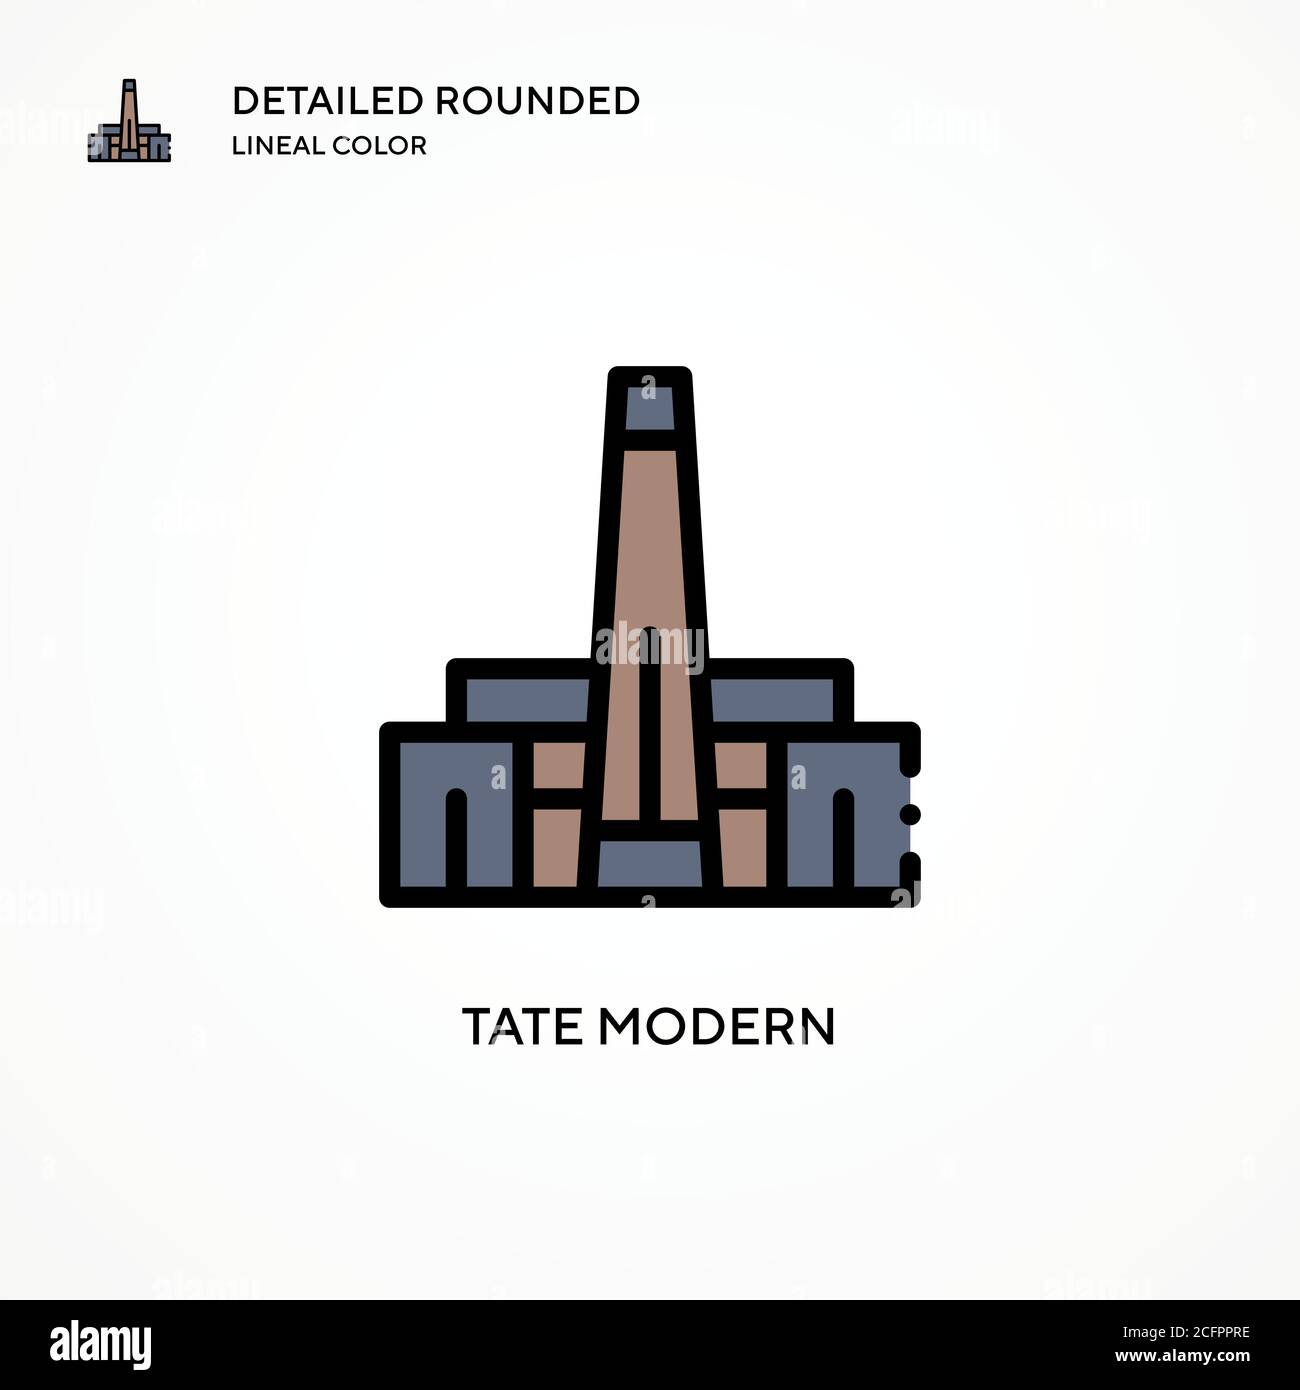 Tate Modern Vektor-Symbol. Moderne Vektorgrafik Konzepte. Einfach zu bearbeiten und anzupassen. Stock Vektor